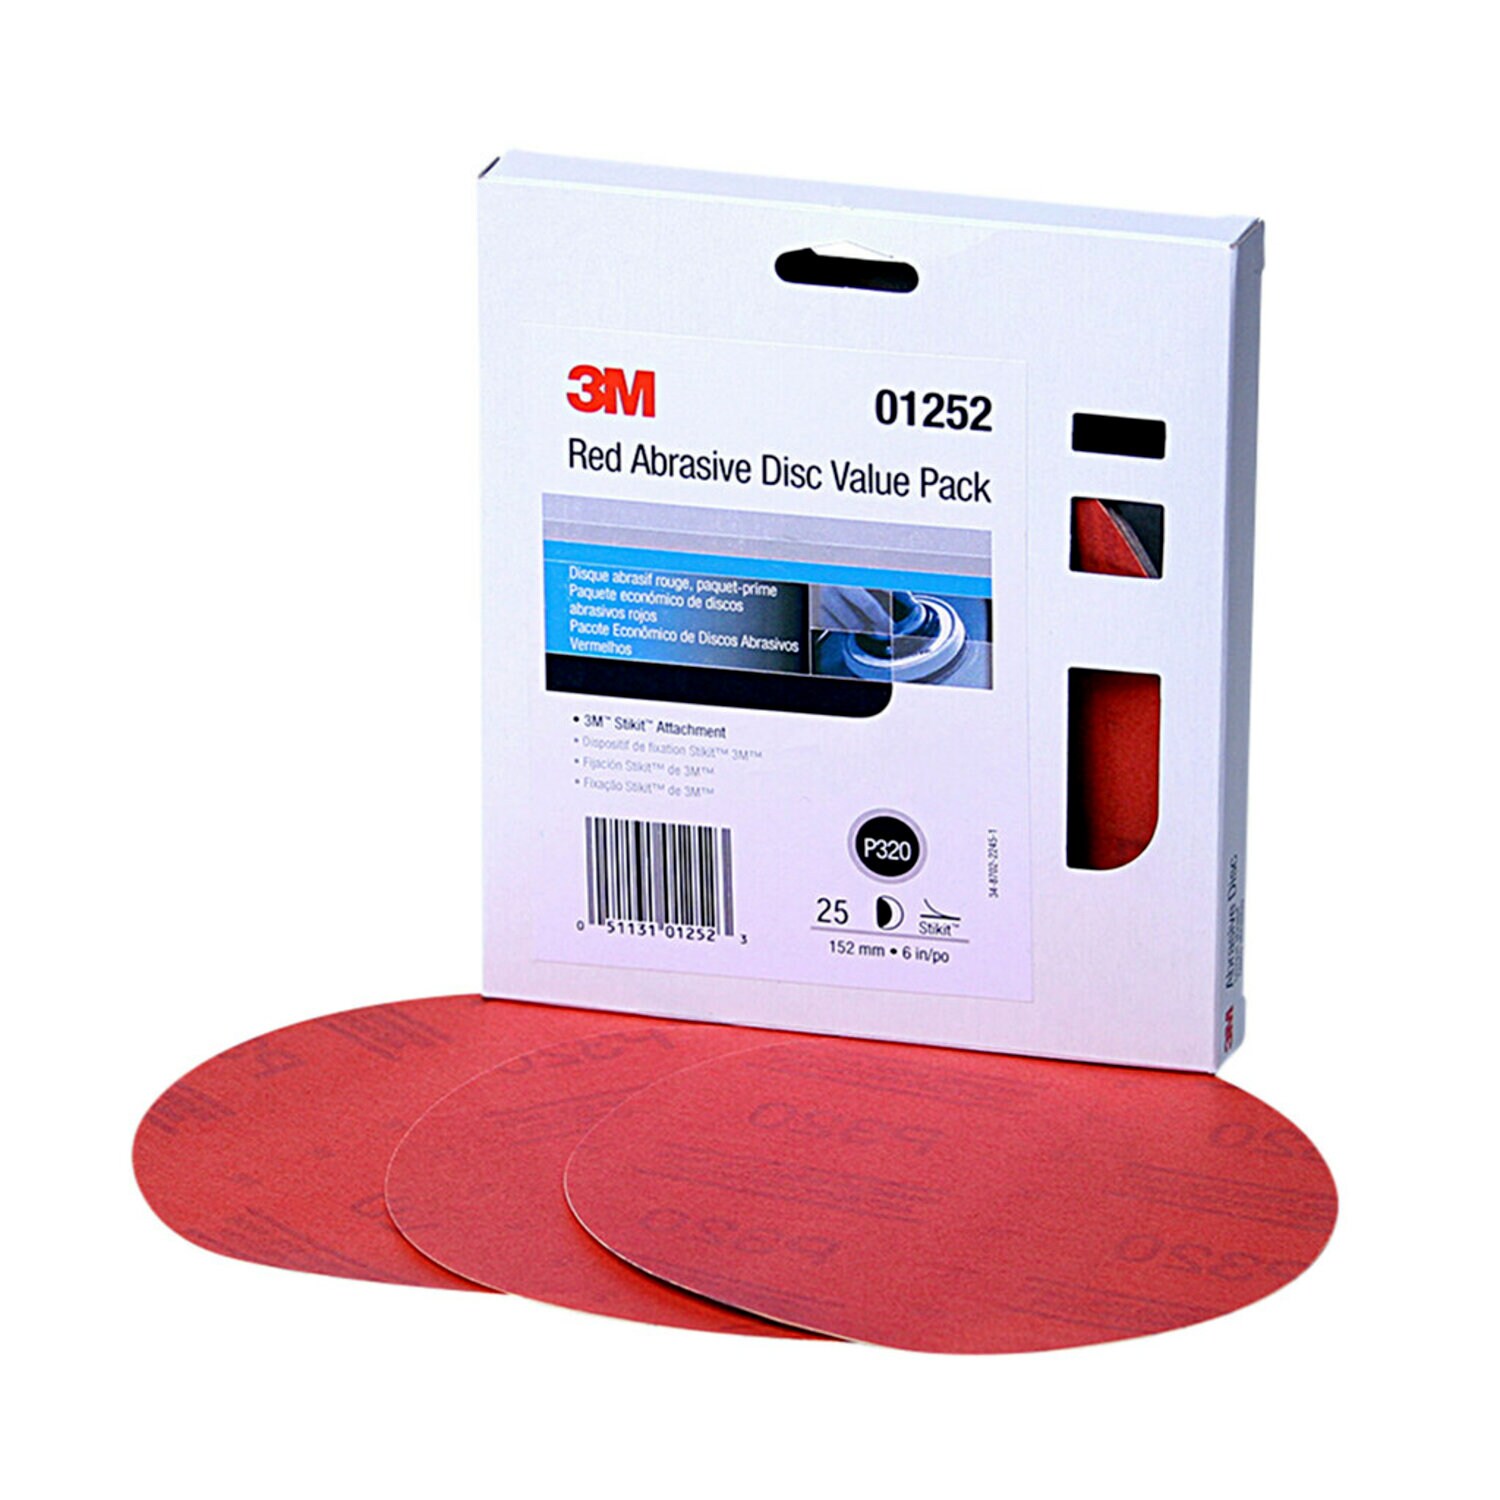 7010362823 - 3M Red Abrasive Stikit Disc Value Pack, 01252, 6 in, P320 grade, 25
discs per pack, 4 packs per case